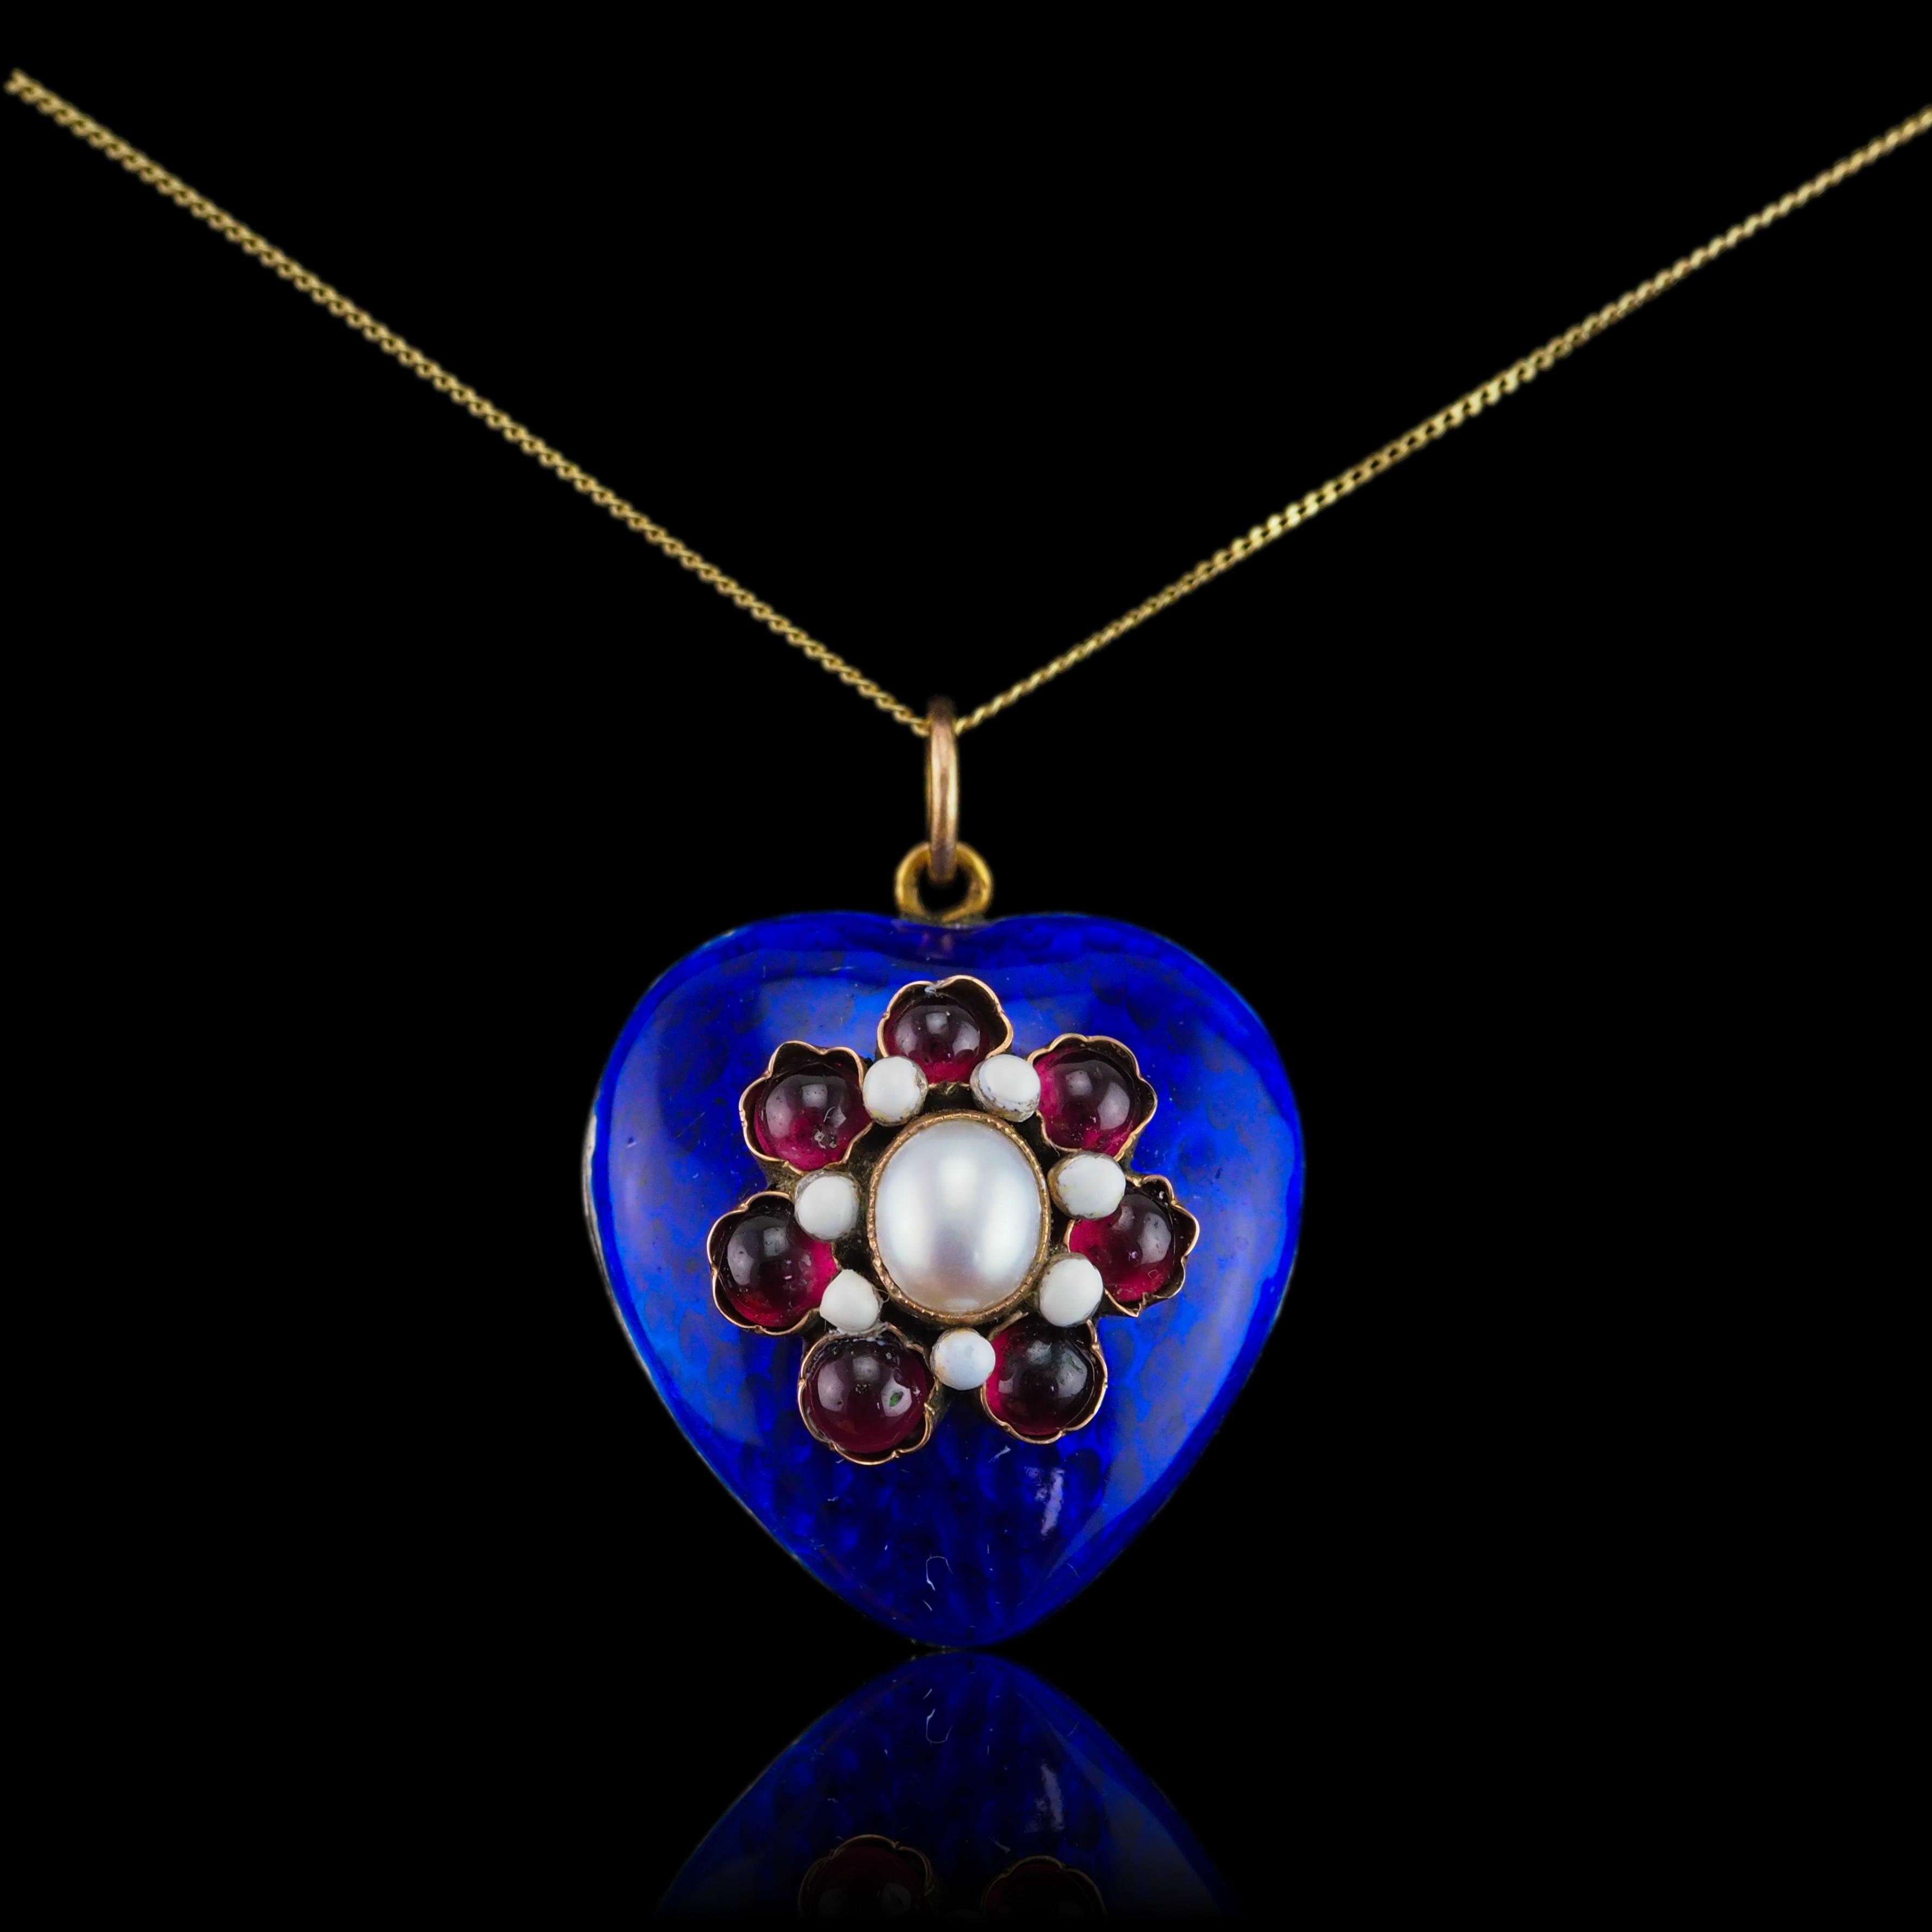 Antique Victorian Blue Enamel Garnet Heart Necklace 'Puffy' Pendant - c.1900 6